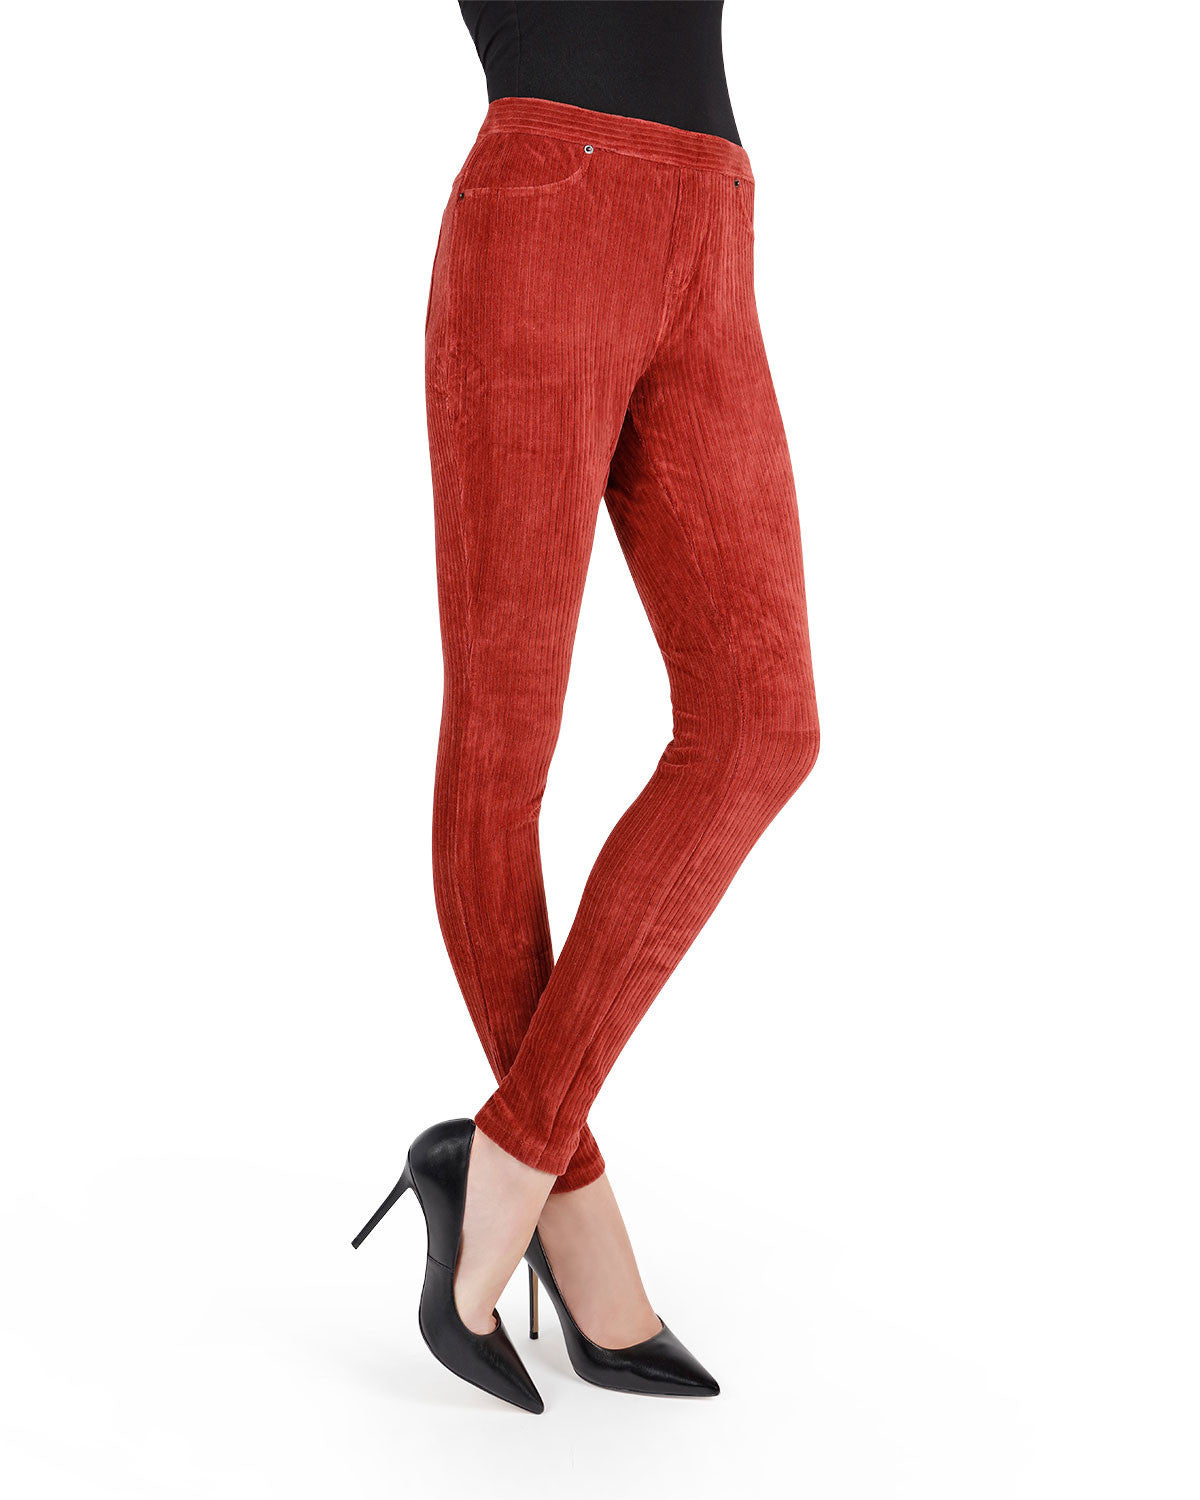 Women's Straight Up Cool Classic Corduroy Leggings брюки V94969834Размер: L  купить по выгодной цене от 6306 руб. в интернет-магазине   с доставкой